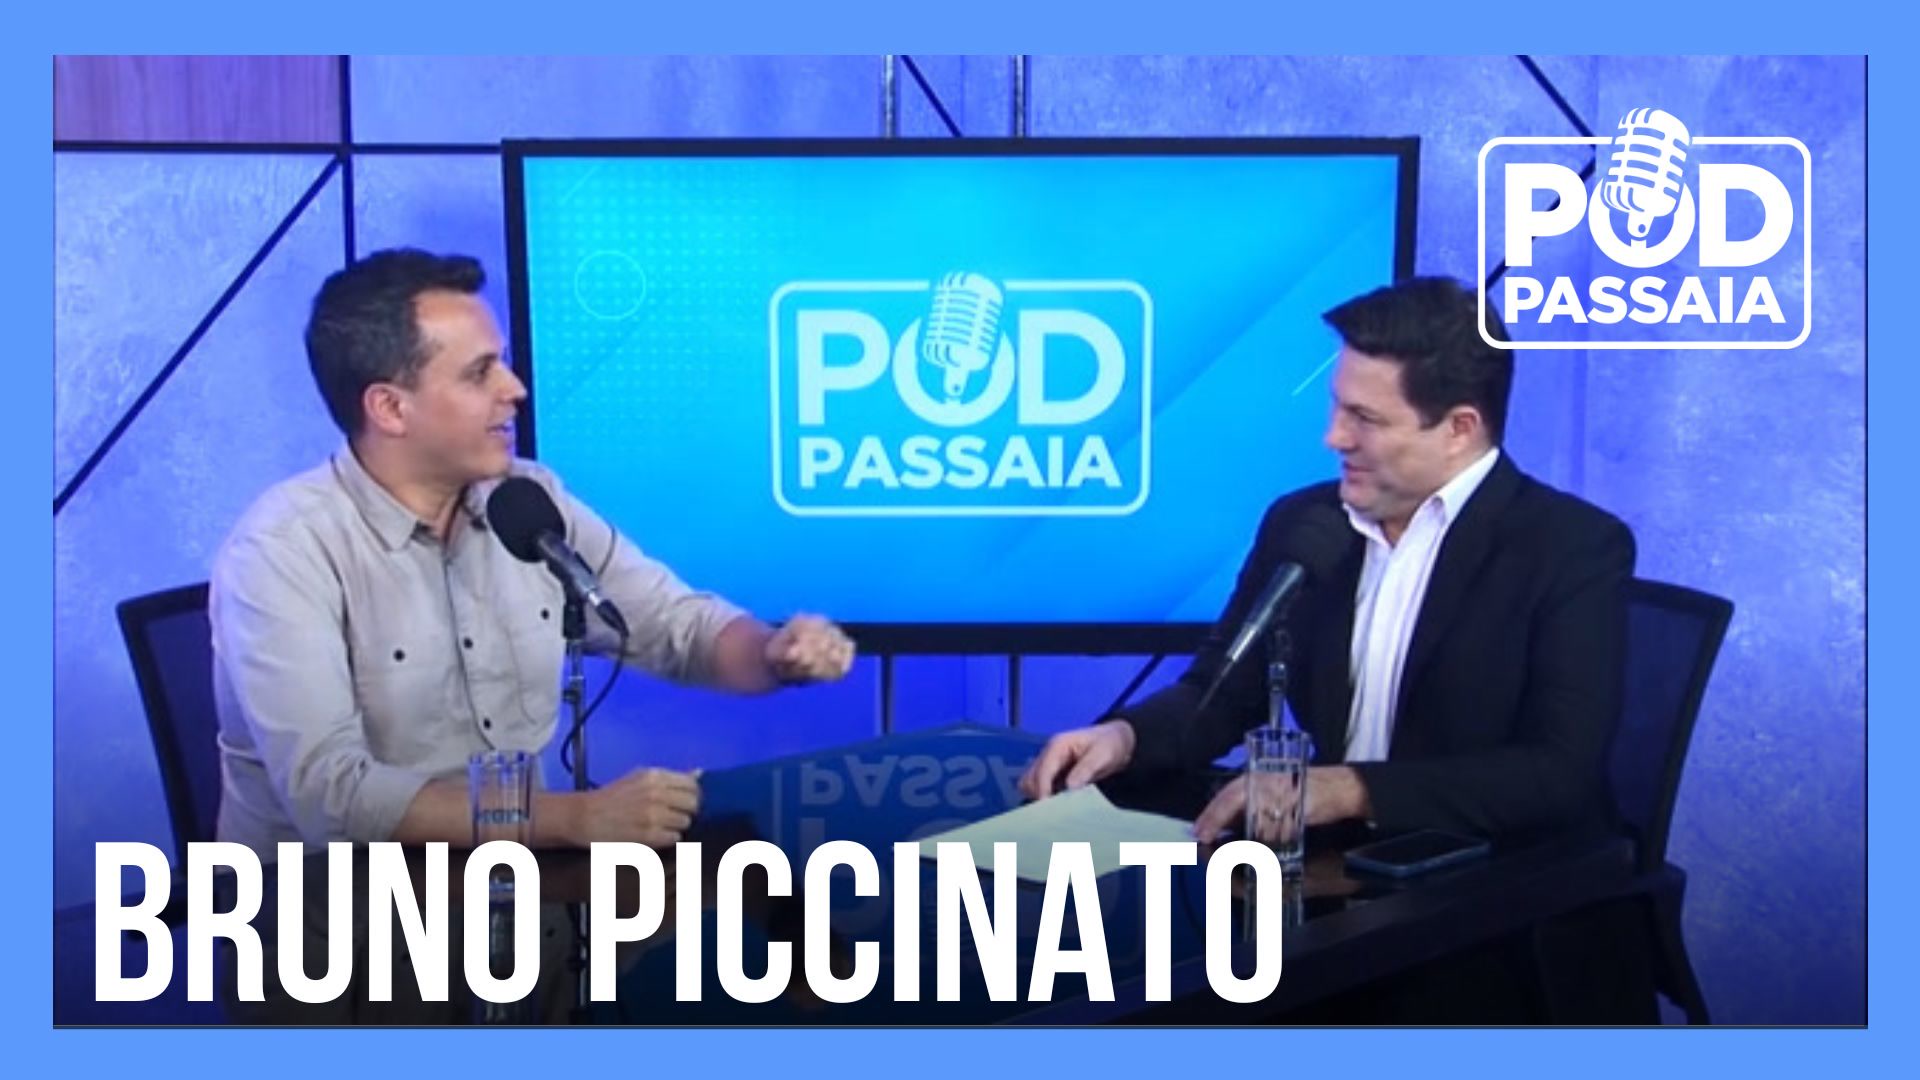 Vídeo: Podcast PodPassaia #06| Piccinato compartilha bastidores inéditos da Copa do Mundo no Catar